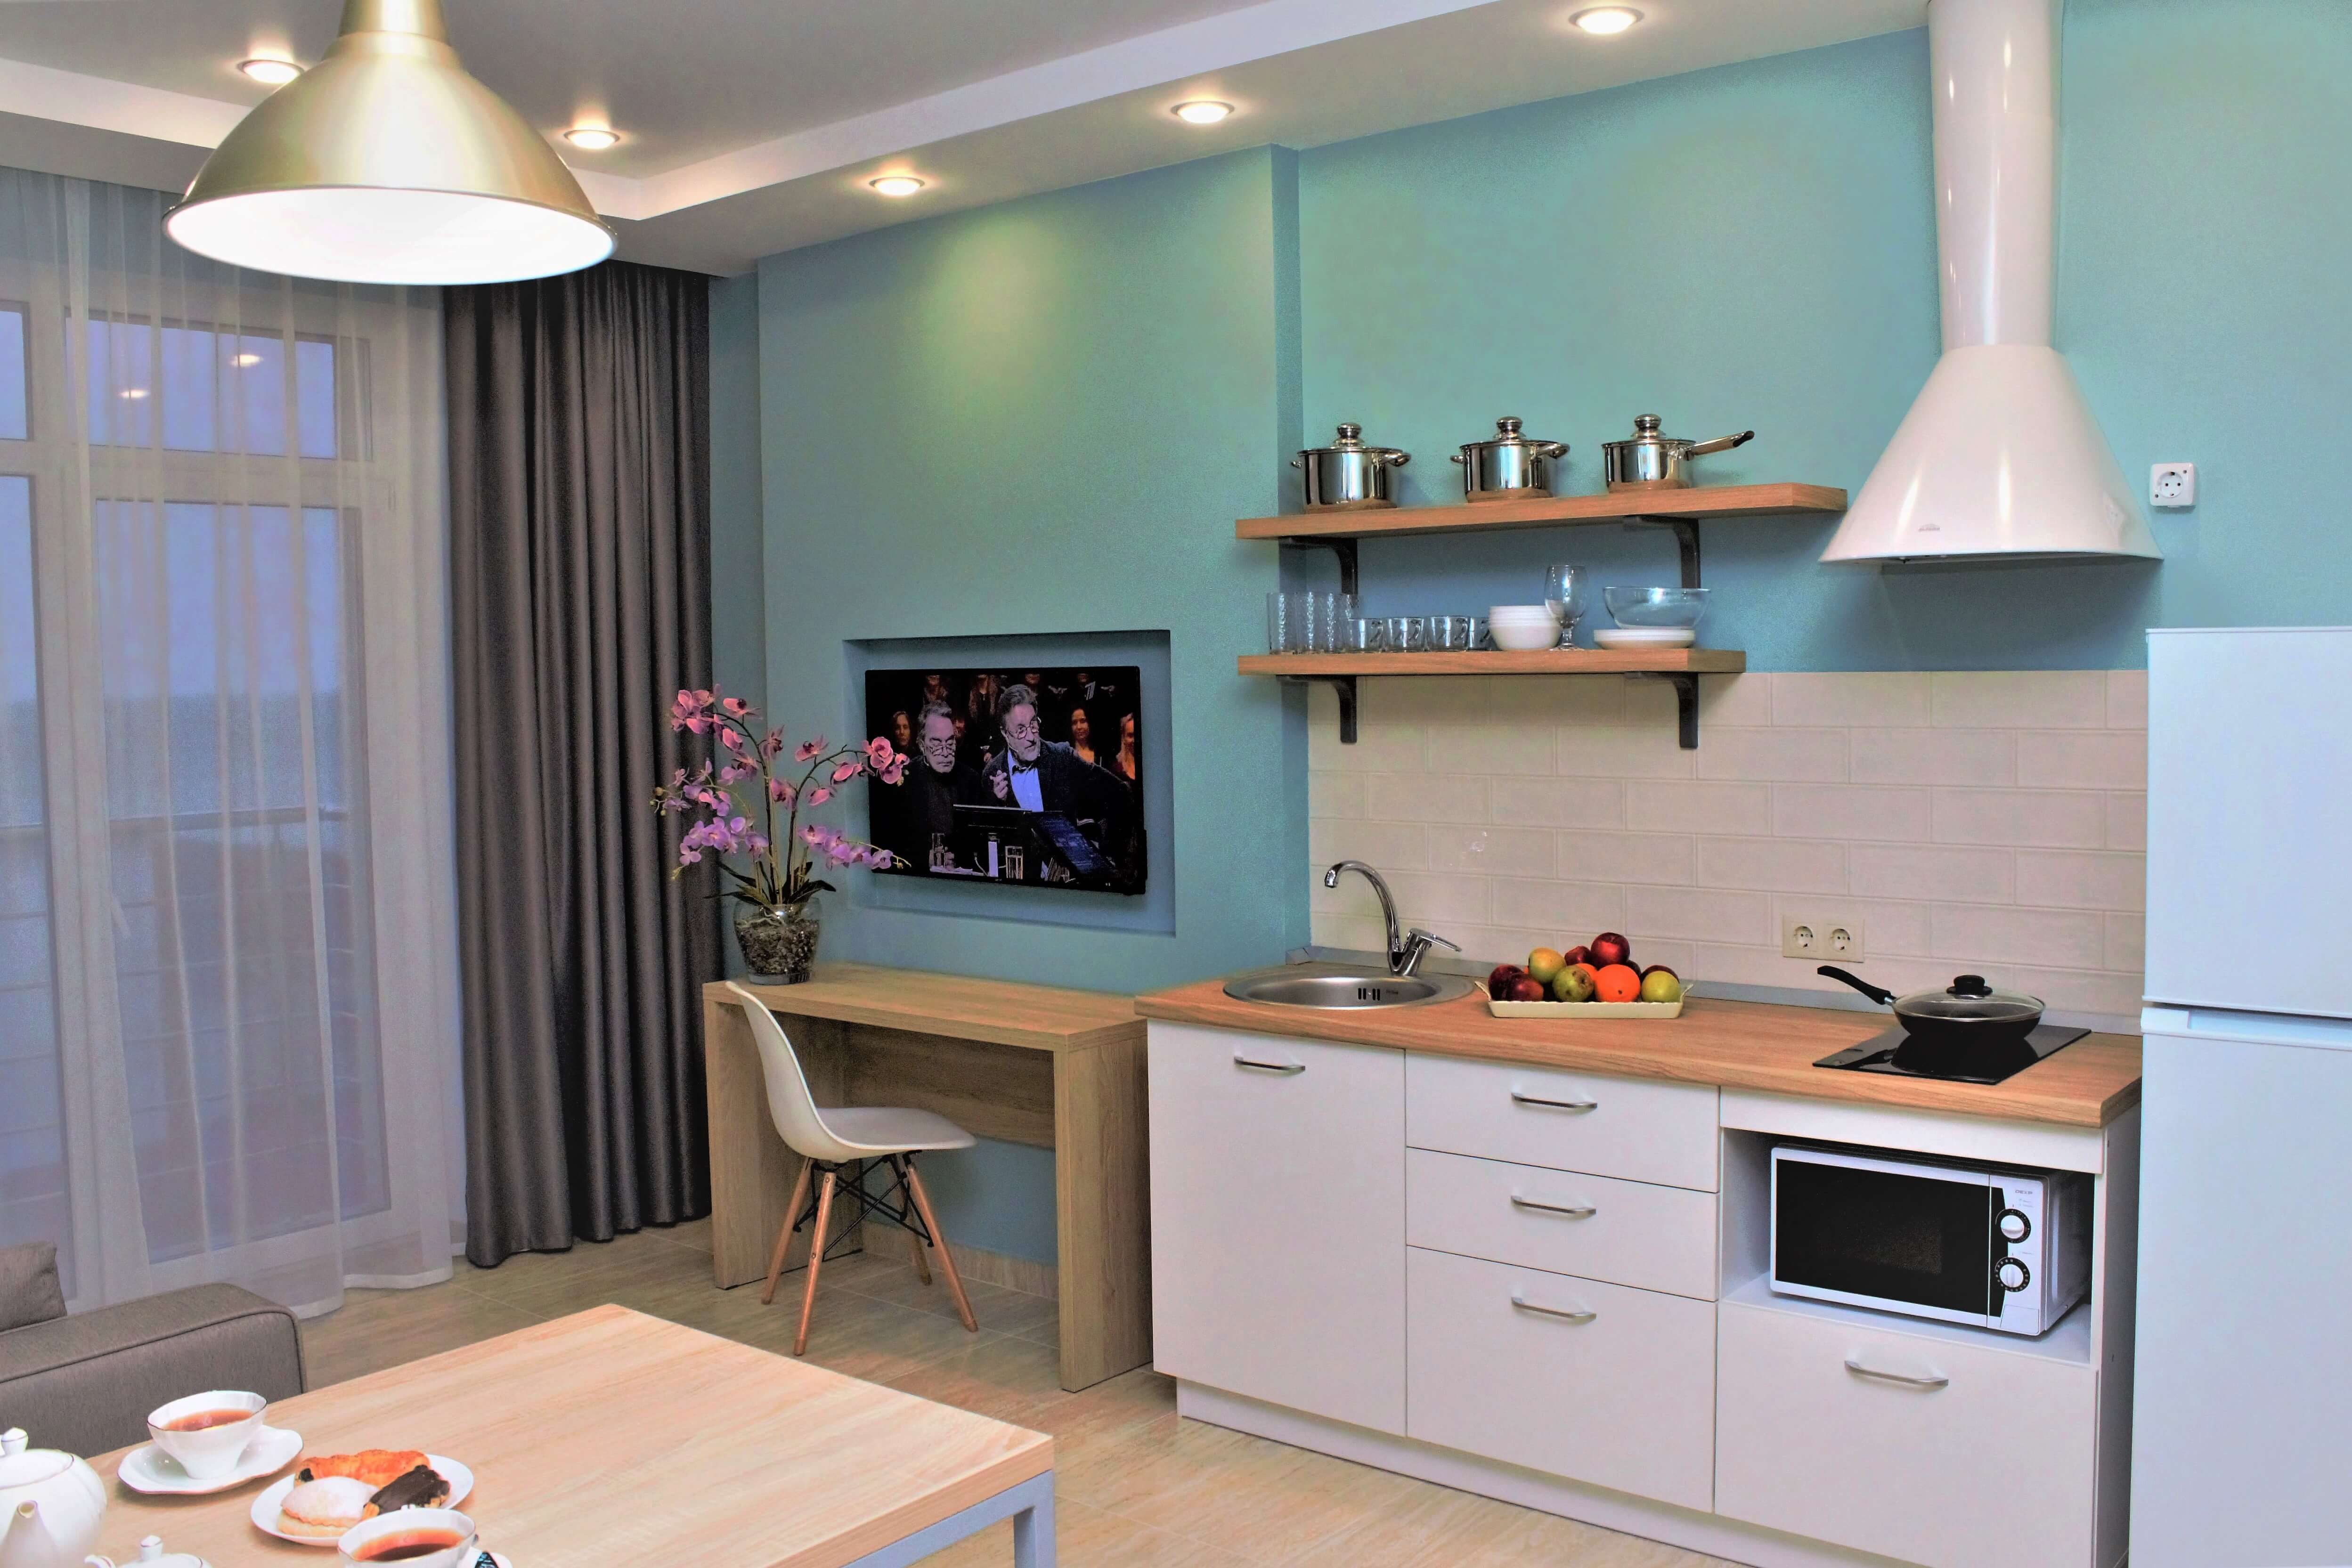 Кухонная зона и небольшой столик у телевизора.